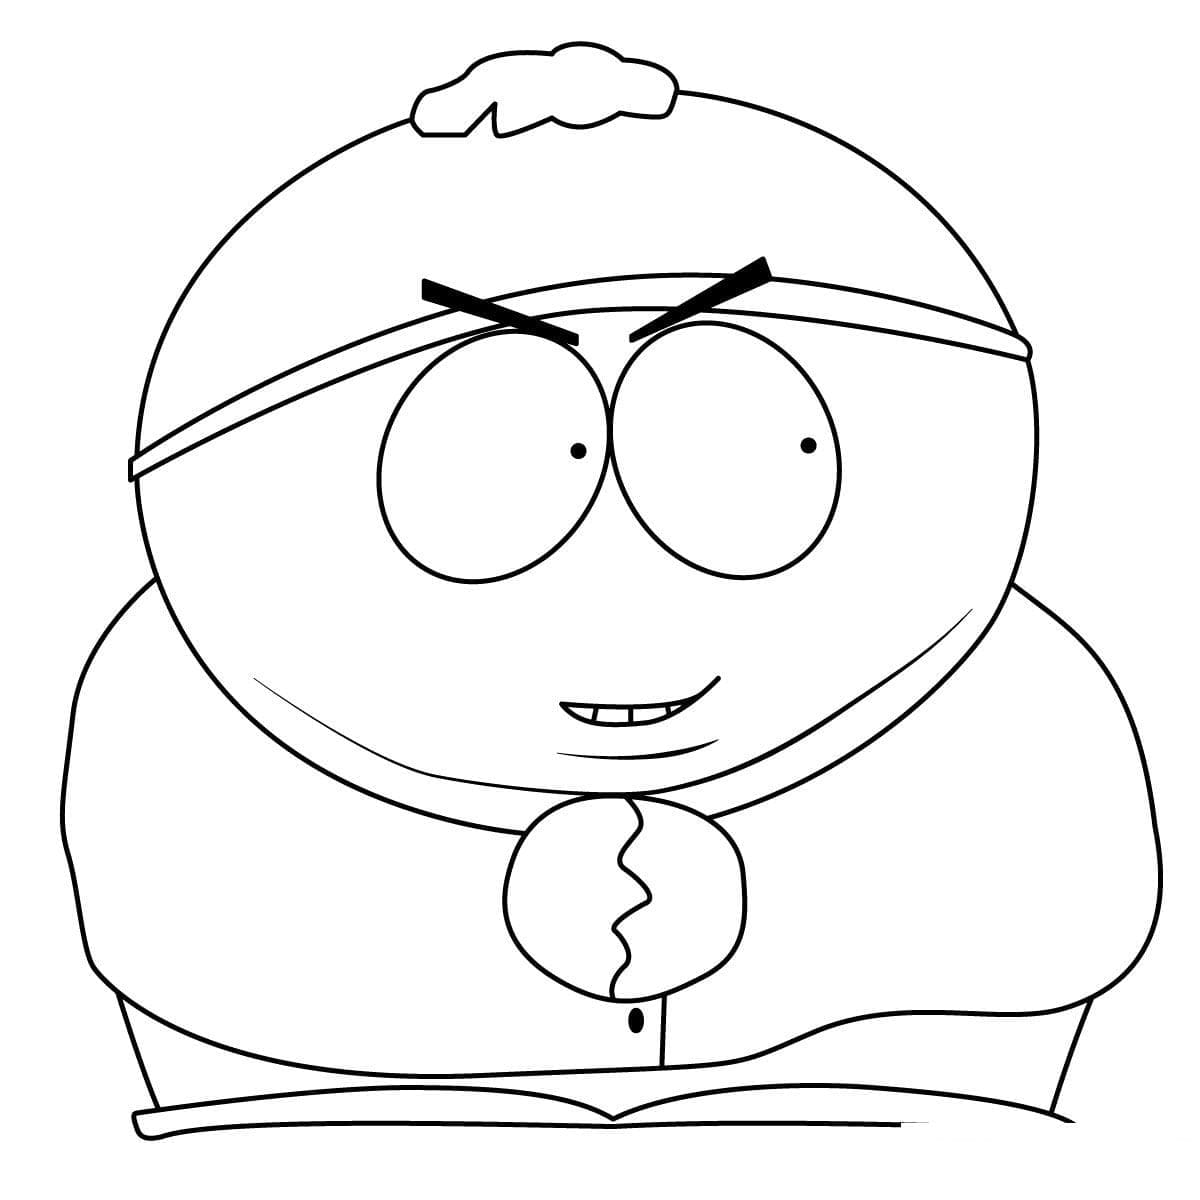 Eric Cartman de South Park coloring page